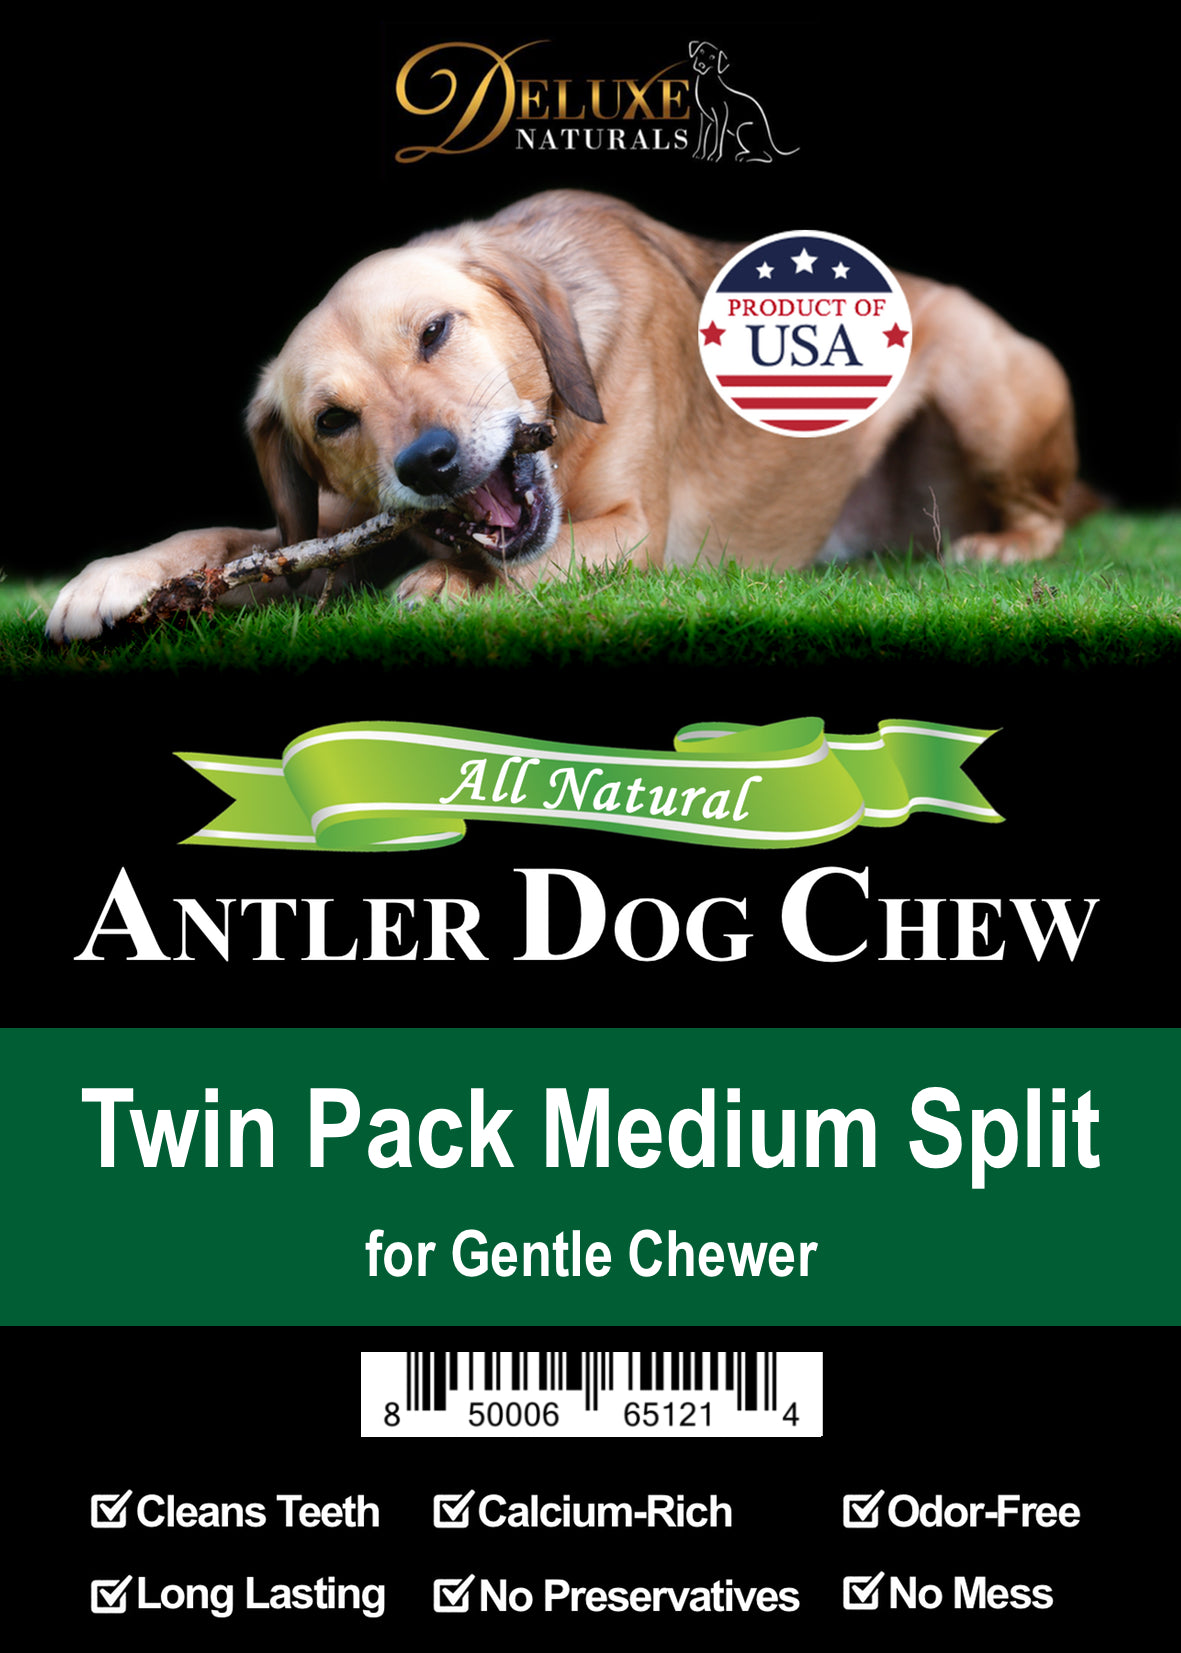 Deluxe Naturals Twin Pack Elk Antler Dog Chew - Medium Split